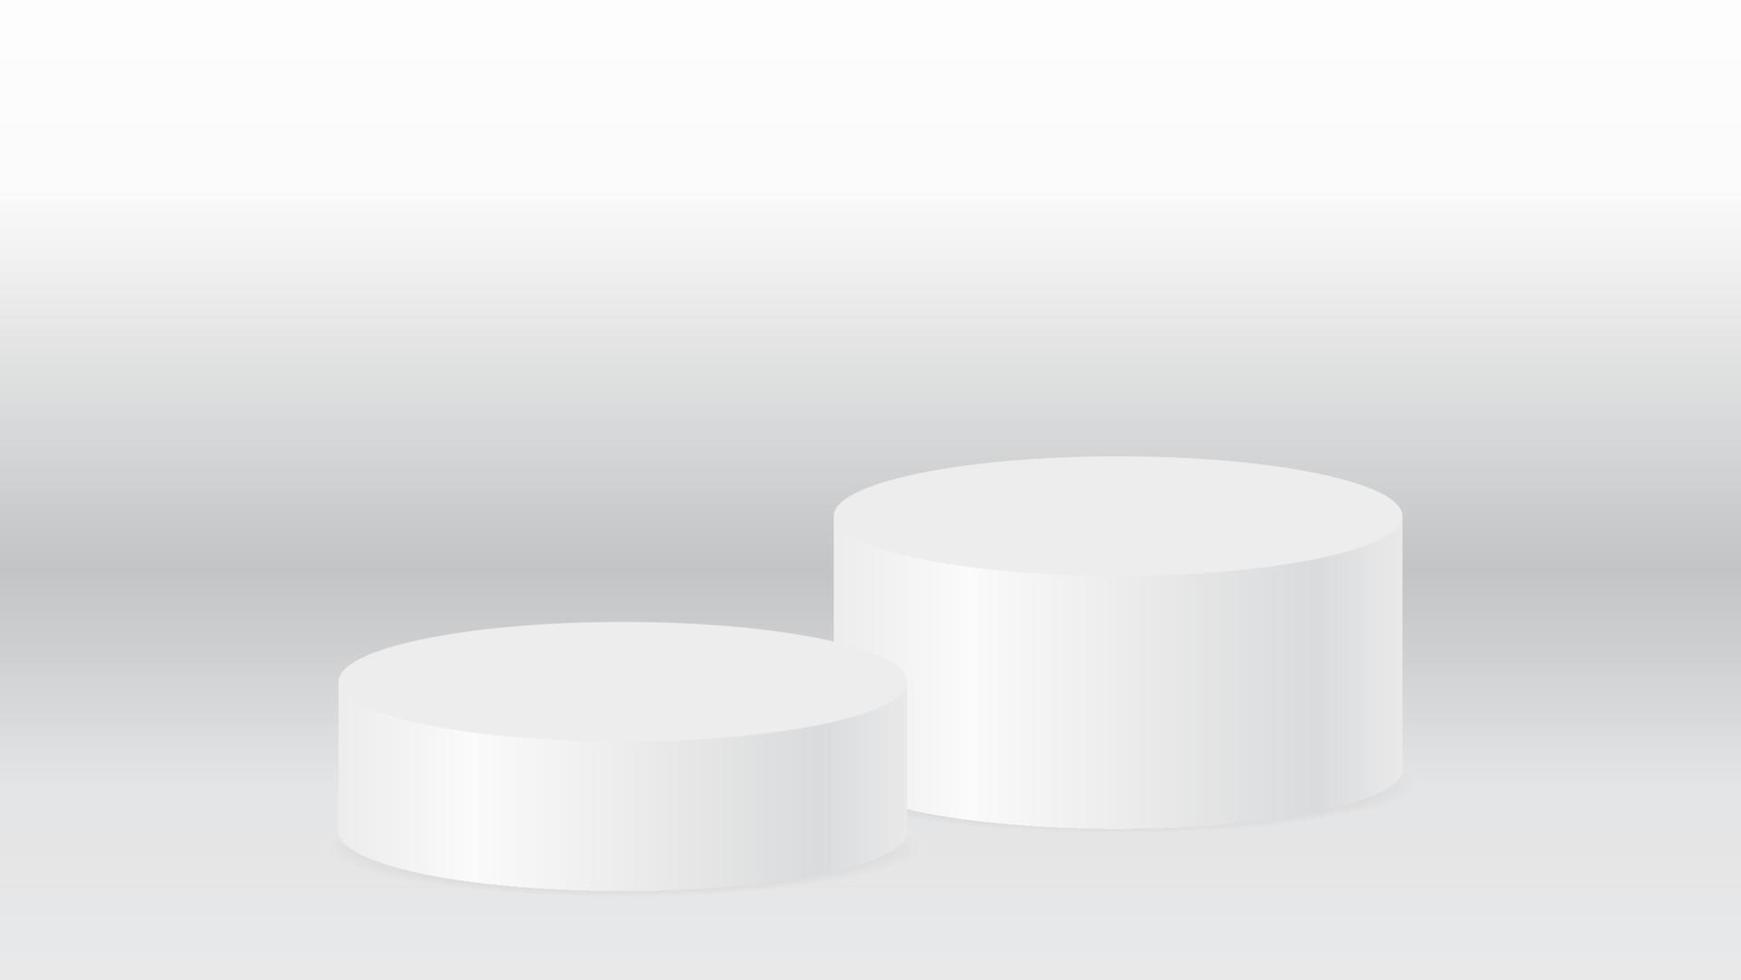 podium blanc blnk sur fond blanc pour la publicité d'affichage du produit et l'élément de conception graphique vecteur